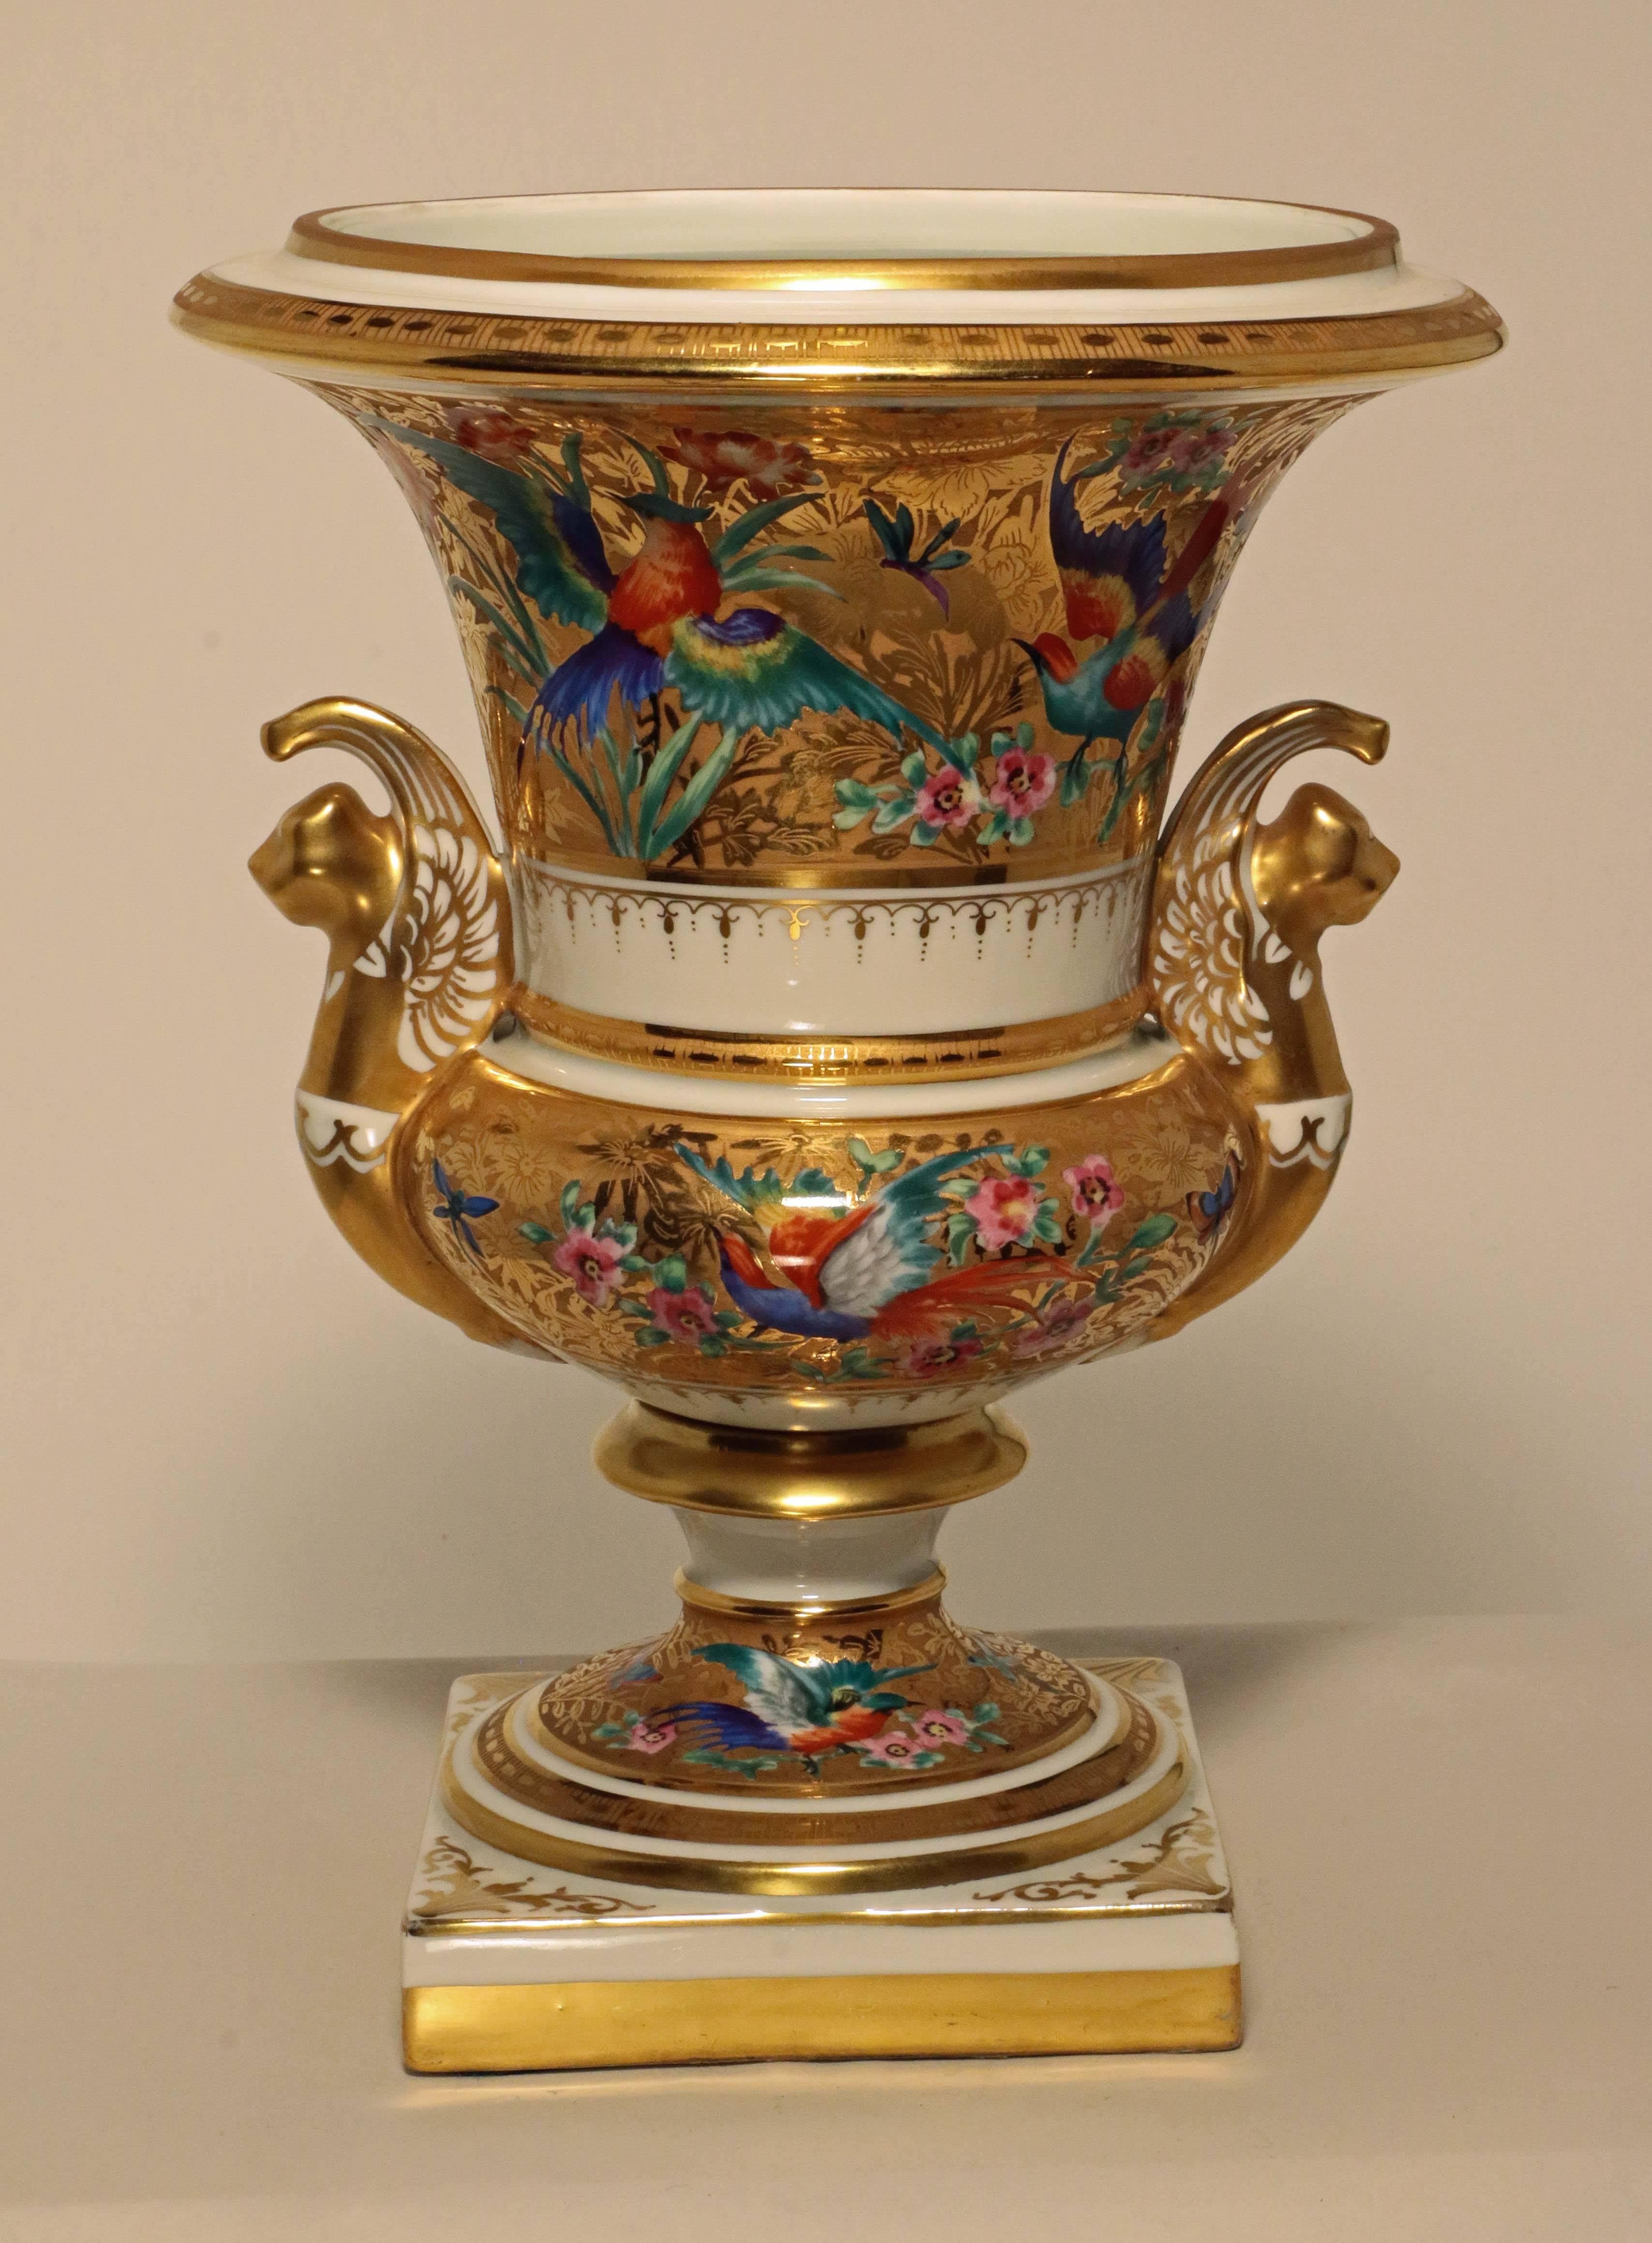 Paire d'urnes en porcelaine de style Empire de Paris, peintes et dorées 1